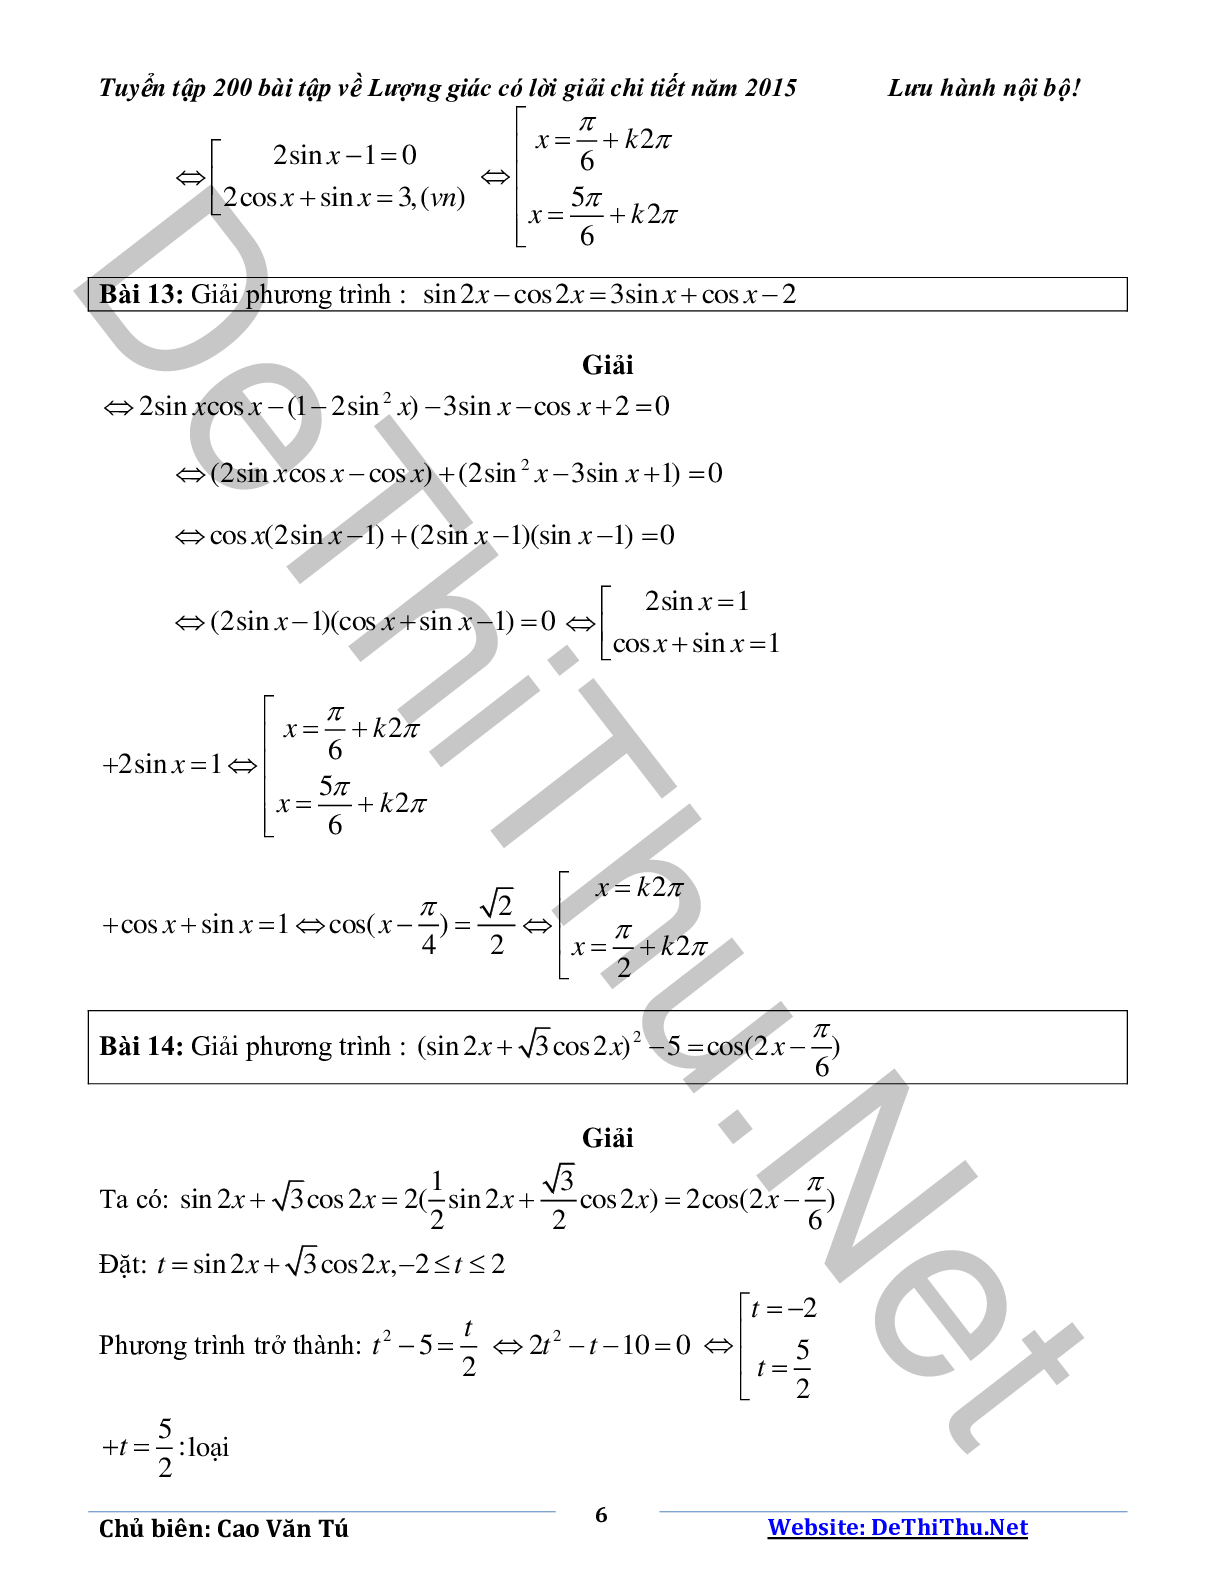 Tuyển tập 200 bài tập lượng giác có lời giải chi tiết năm 2015 (trang 6)